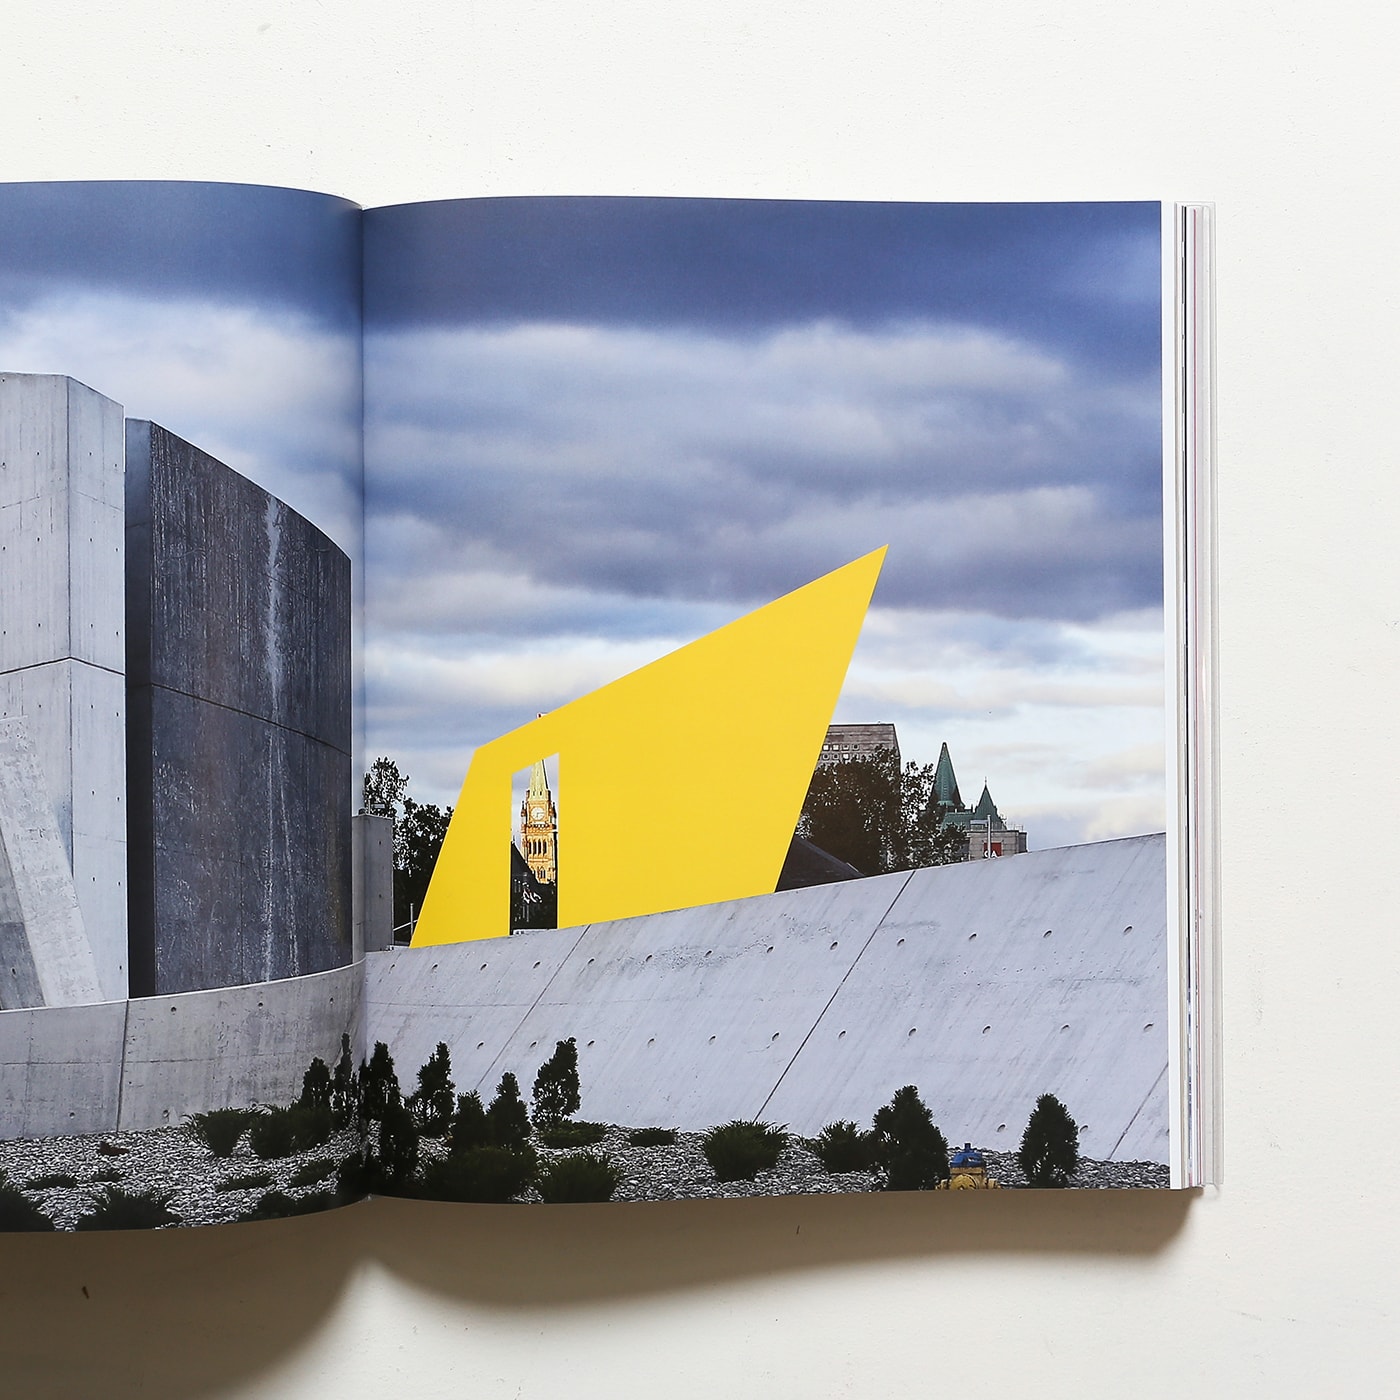 Daniel Libeskind: Edge of Order